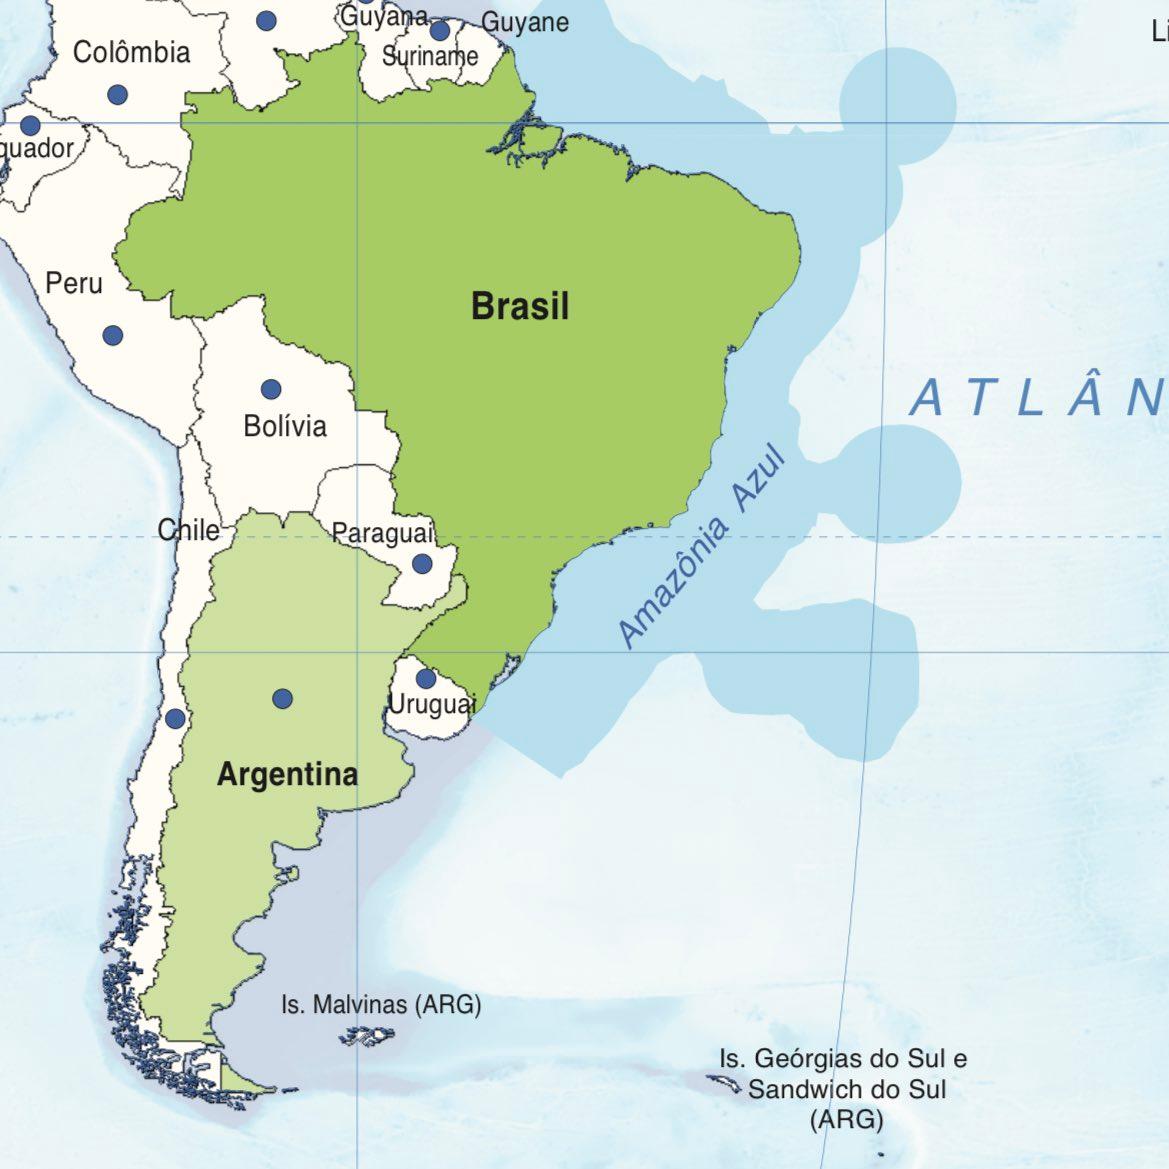 Malvinas aparecem como parte do território argentino